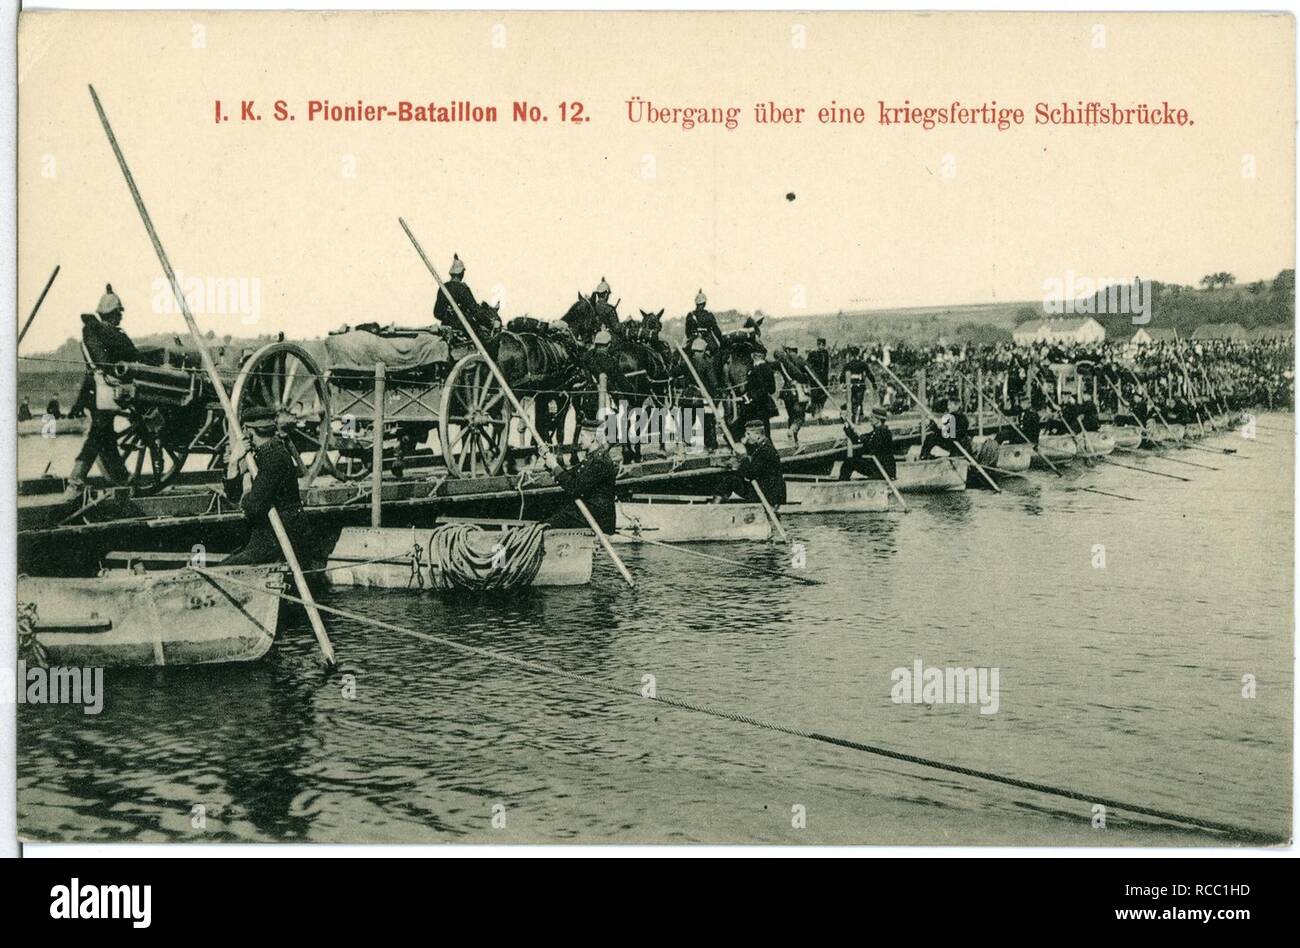 11160--1910-1. Königlich Saxon Pionier-Bataillon Nr. 12 - kriegsfähige Schiffsbrücke Übergang über eine- Banque D'Images